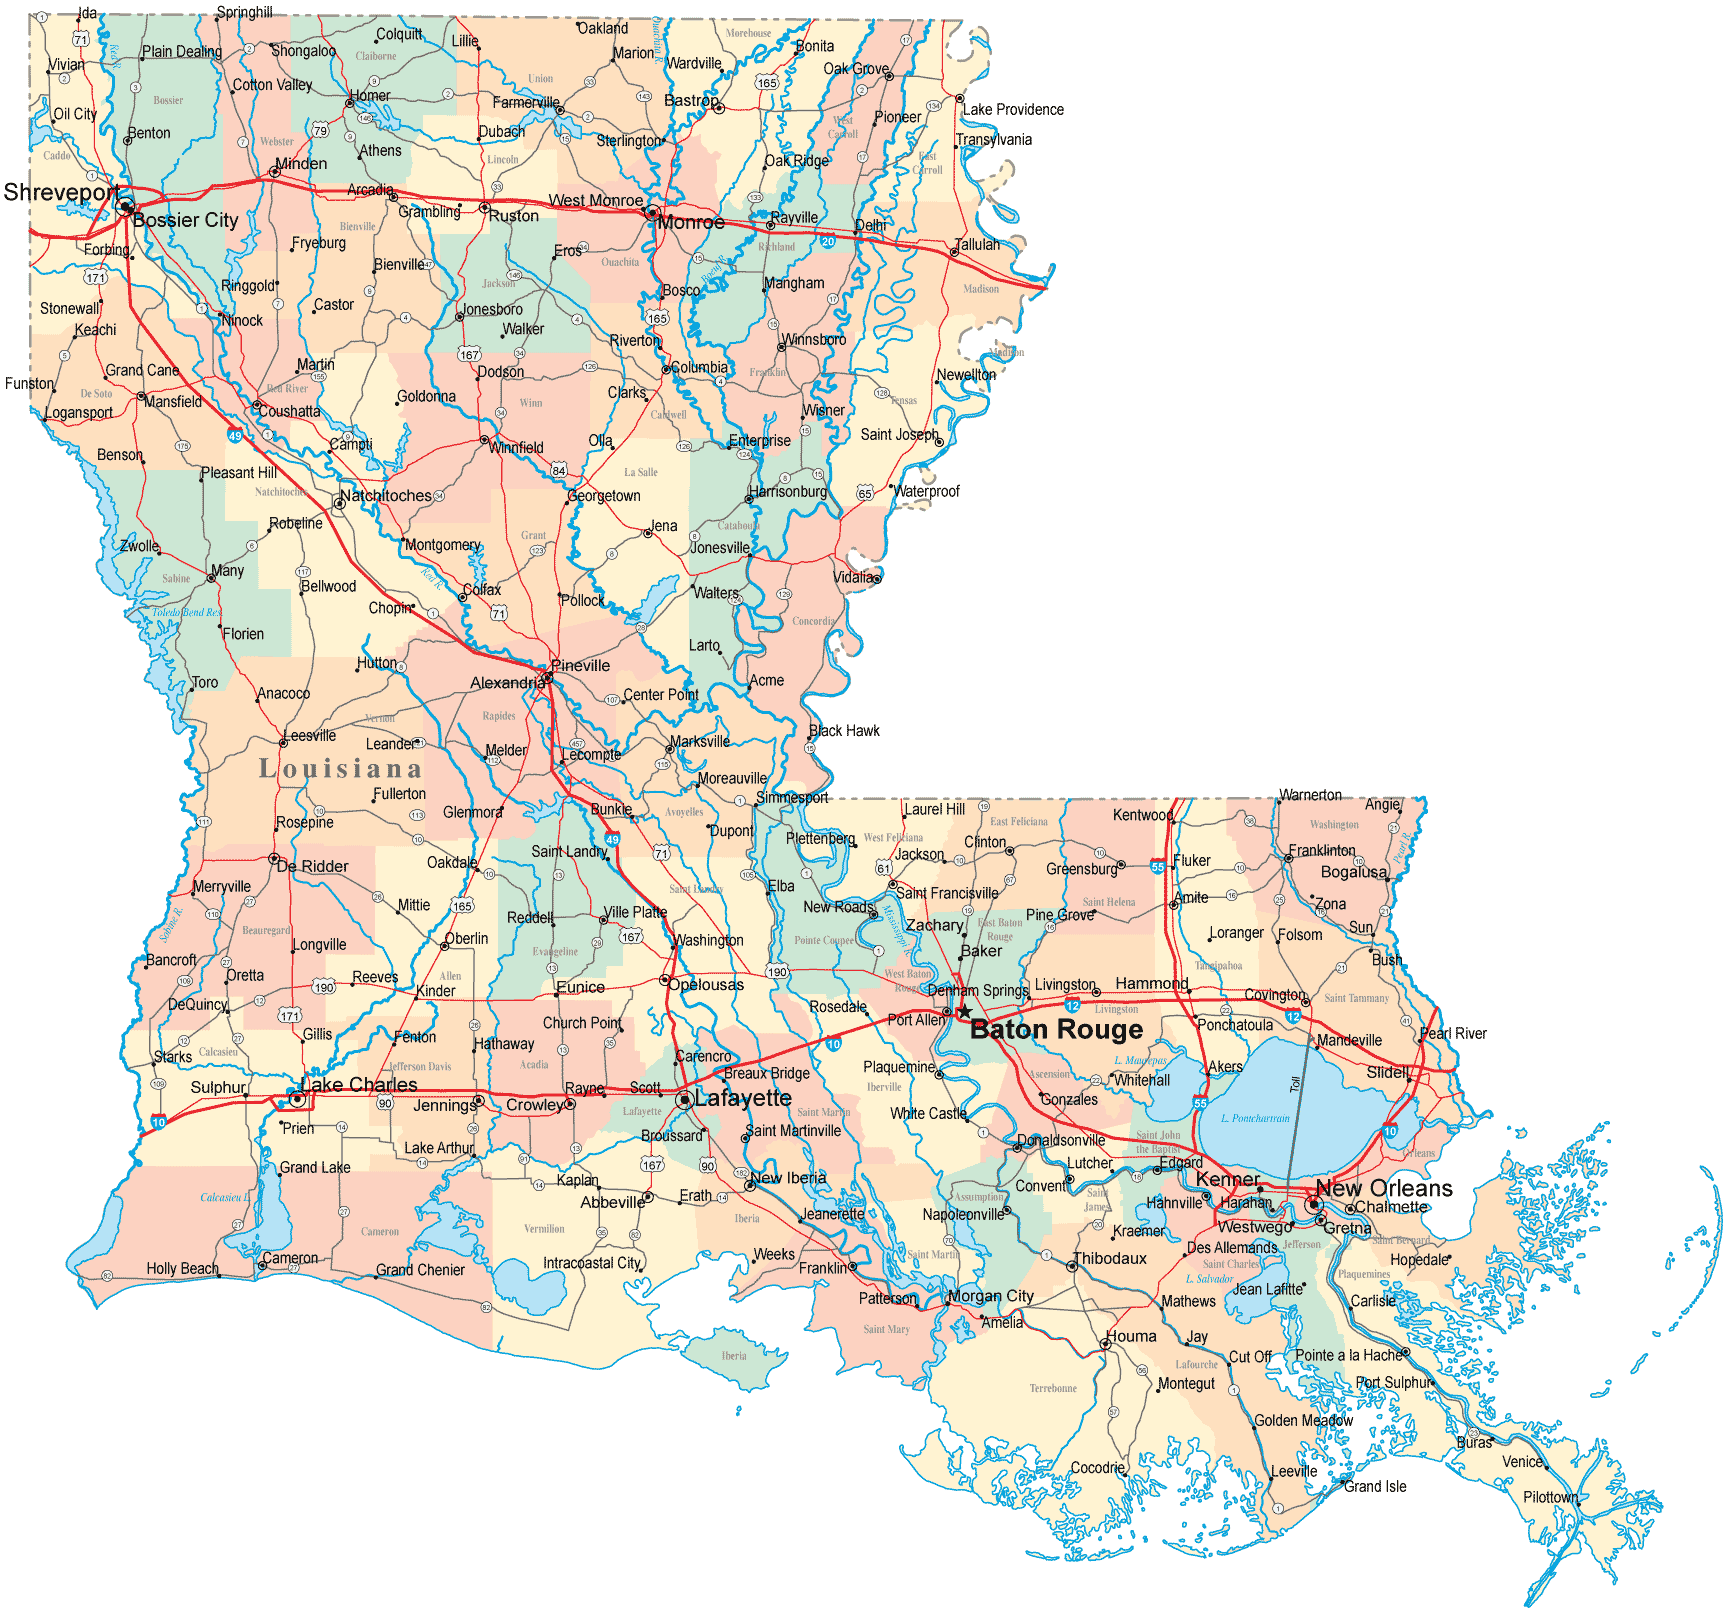 Highway Map Of Louisiana Louisiana Road Map   LA Road Map   Louisiana Highway Map